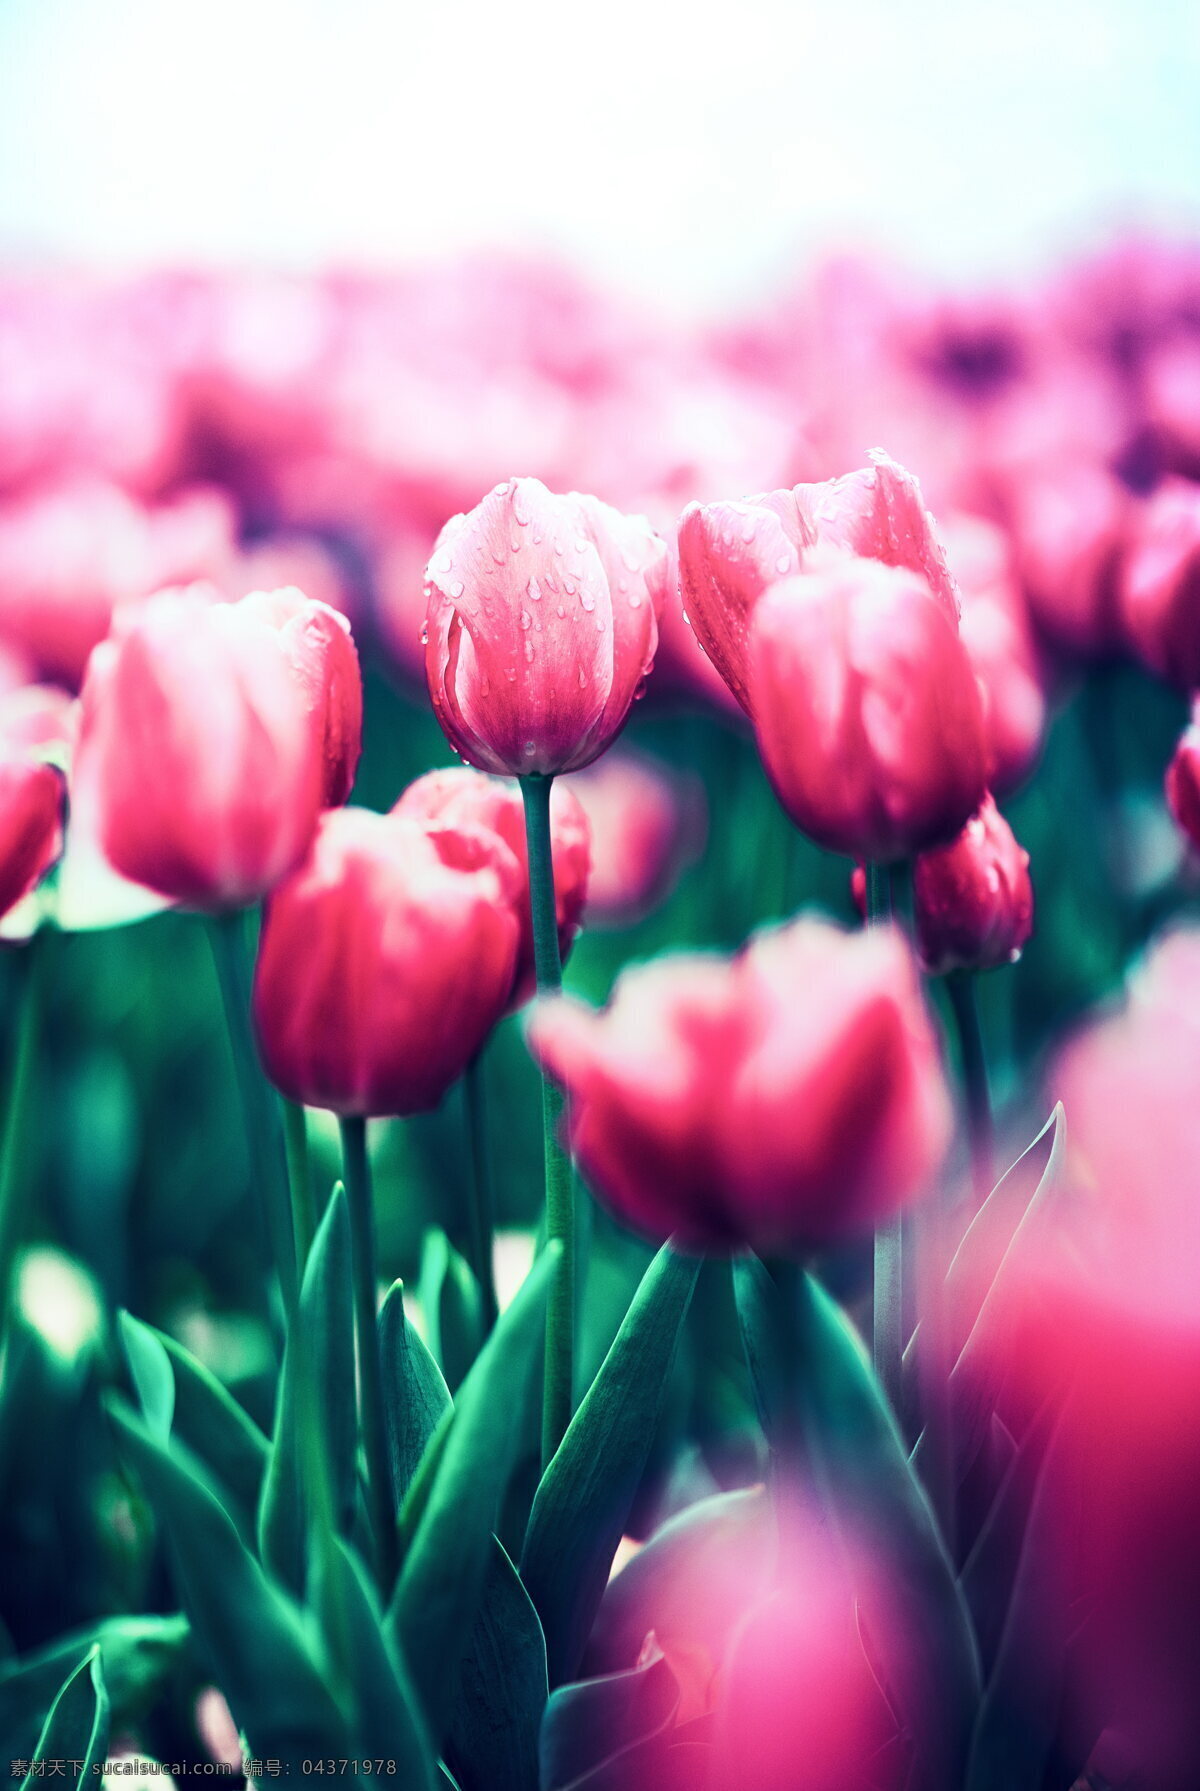 唯美 郁金香 红色 花朵 唯美郁金香 红色郁金香 唯美花朵 红色花朵 生物世界 花草